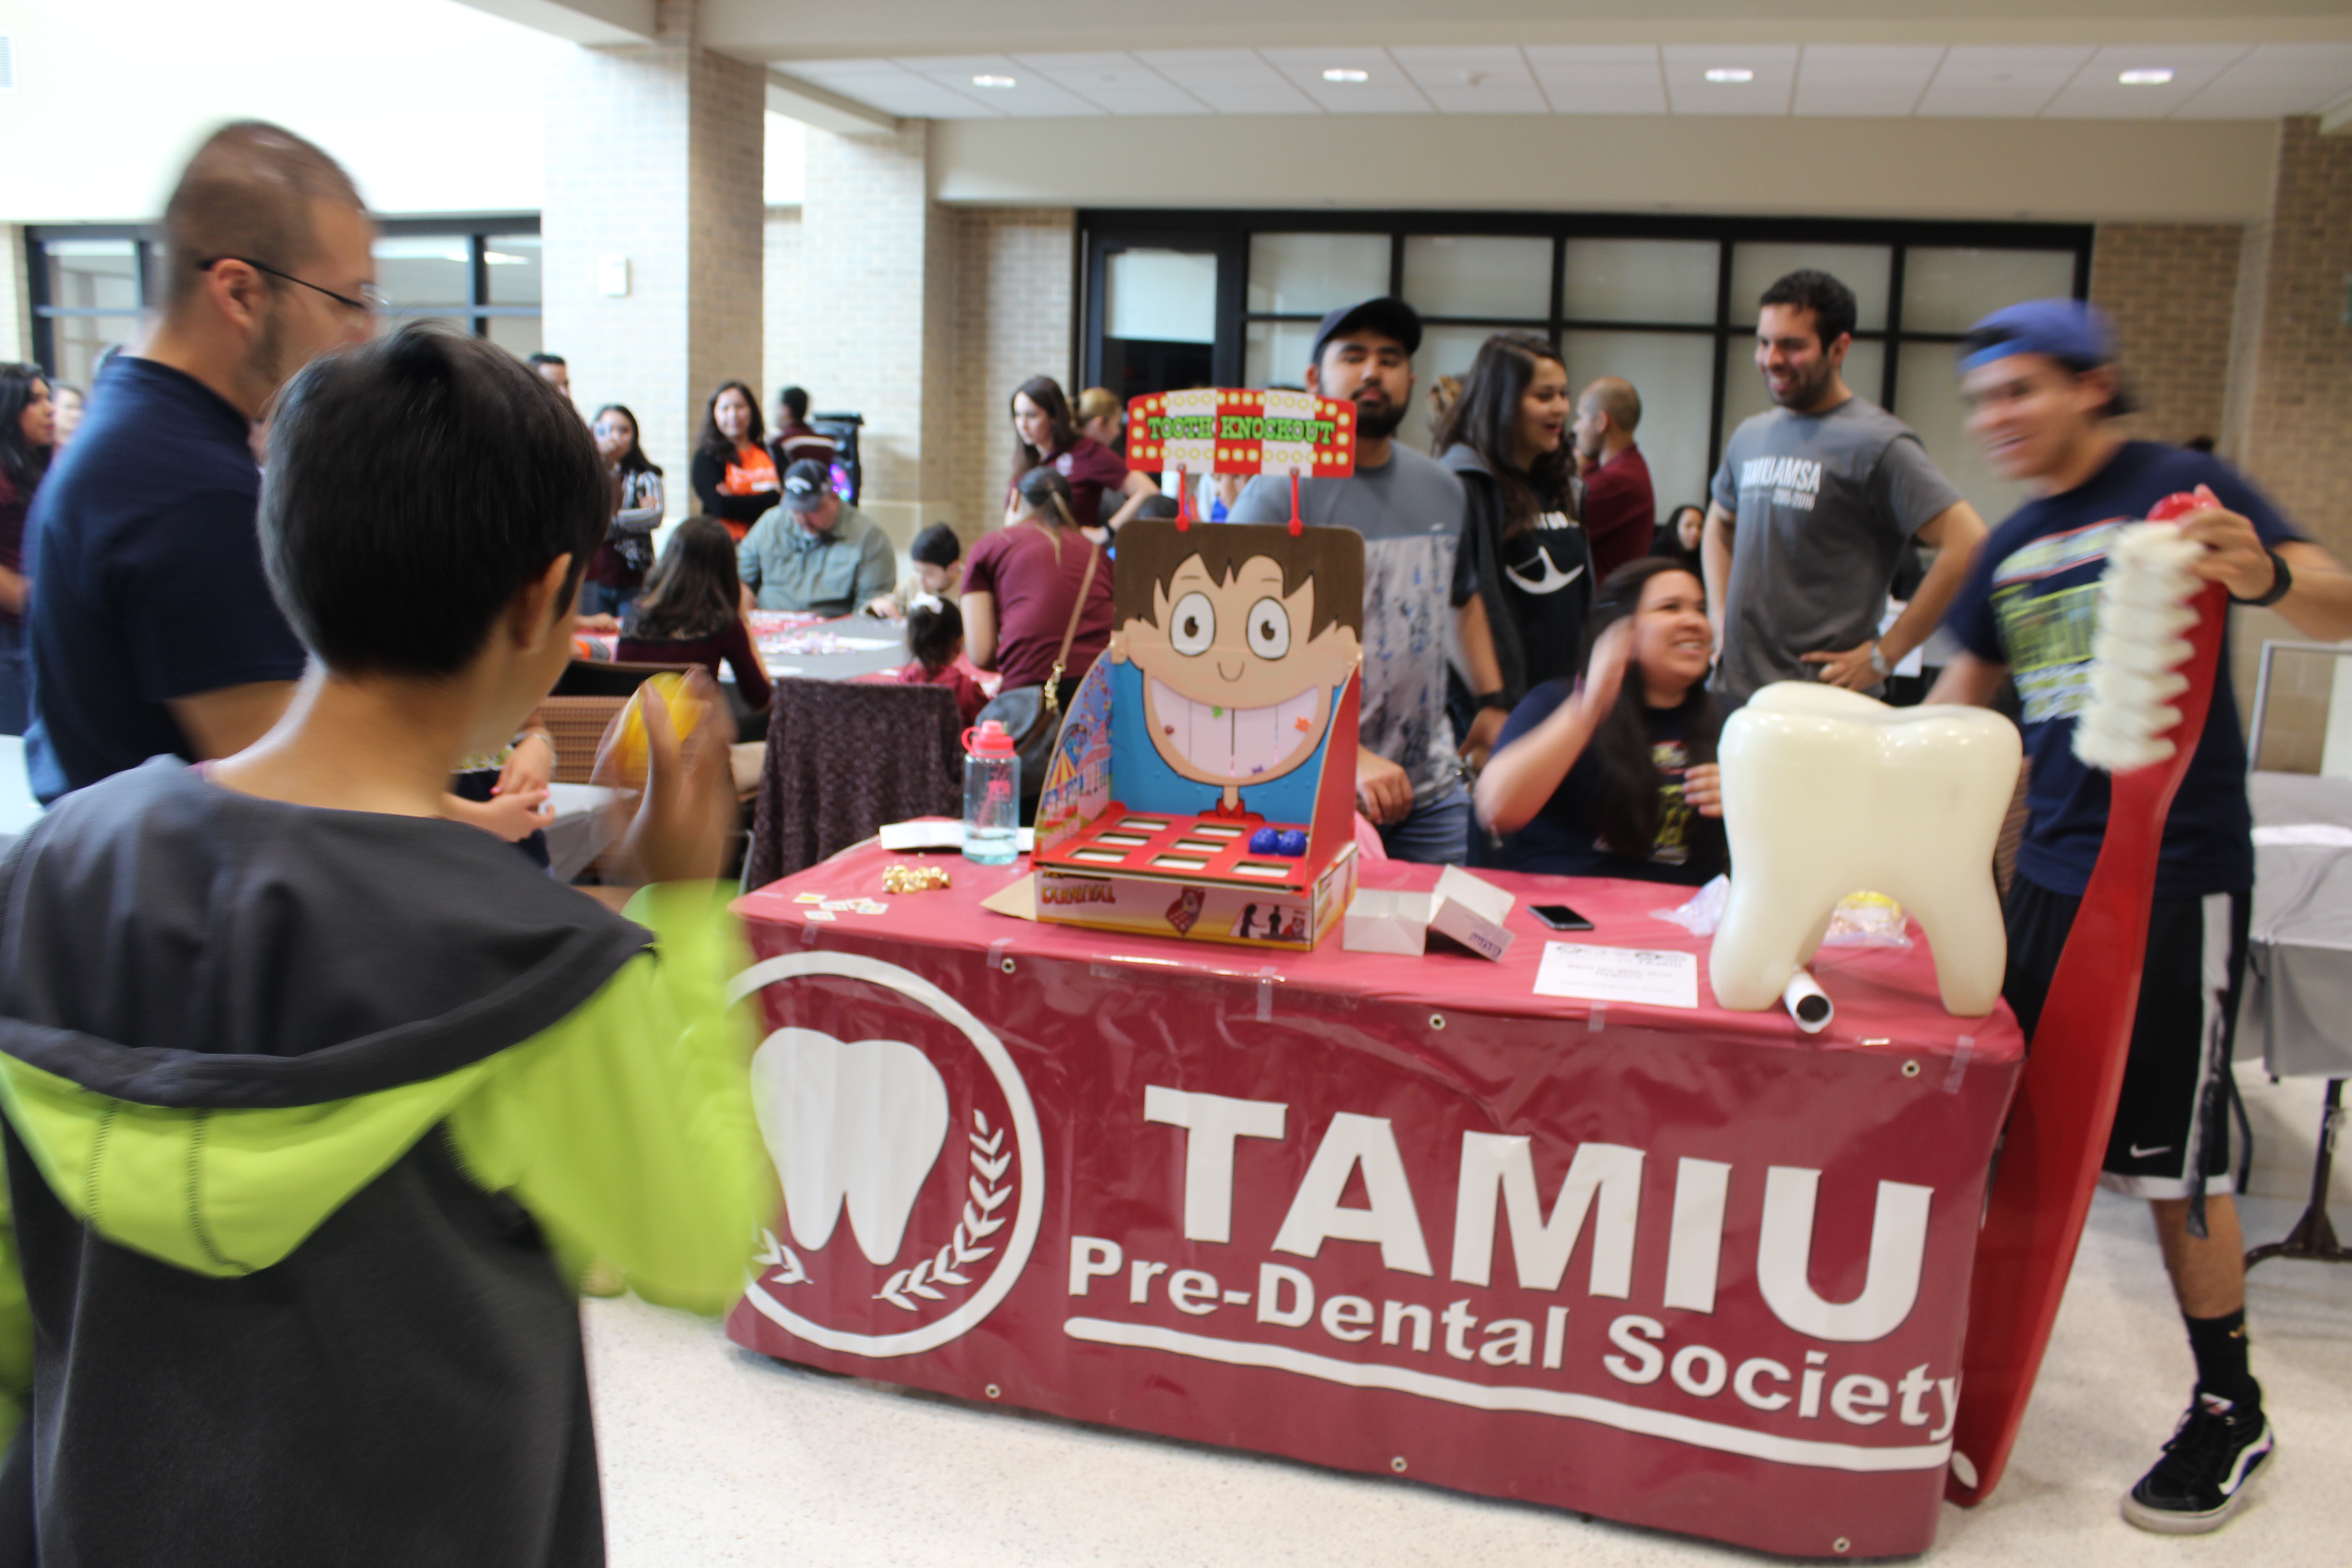 Discover TAMIU 2016 Event